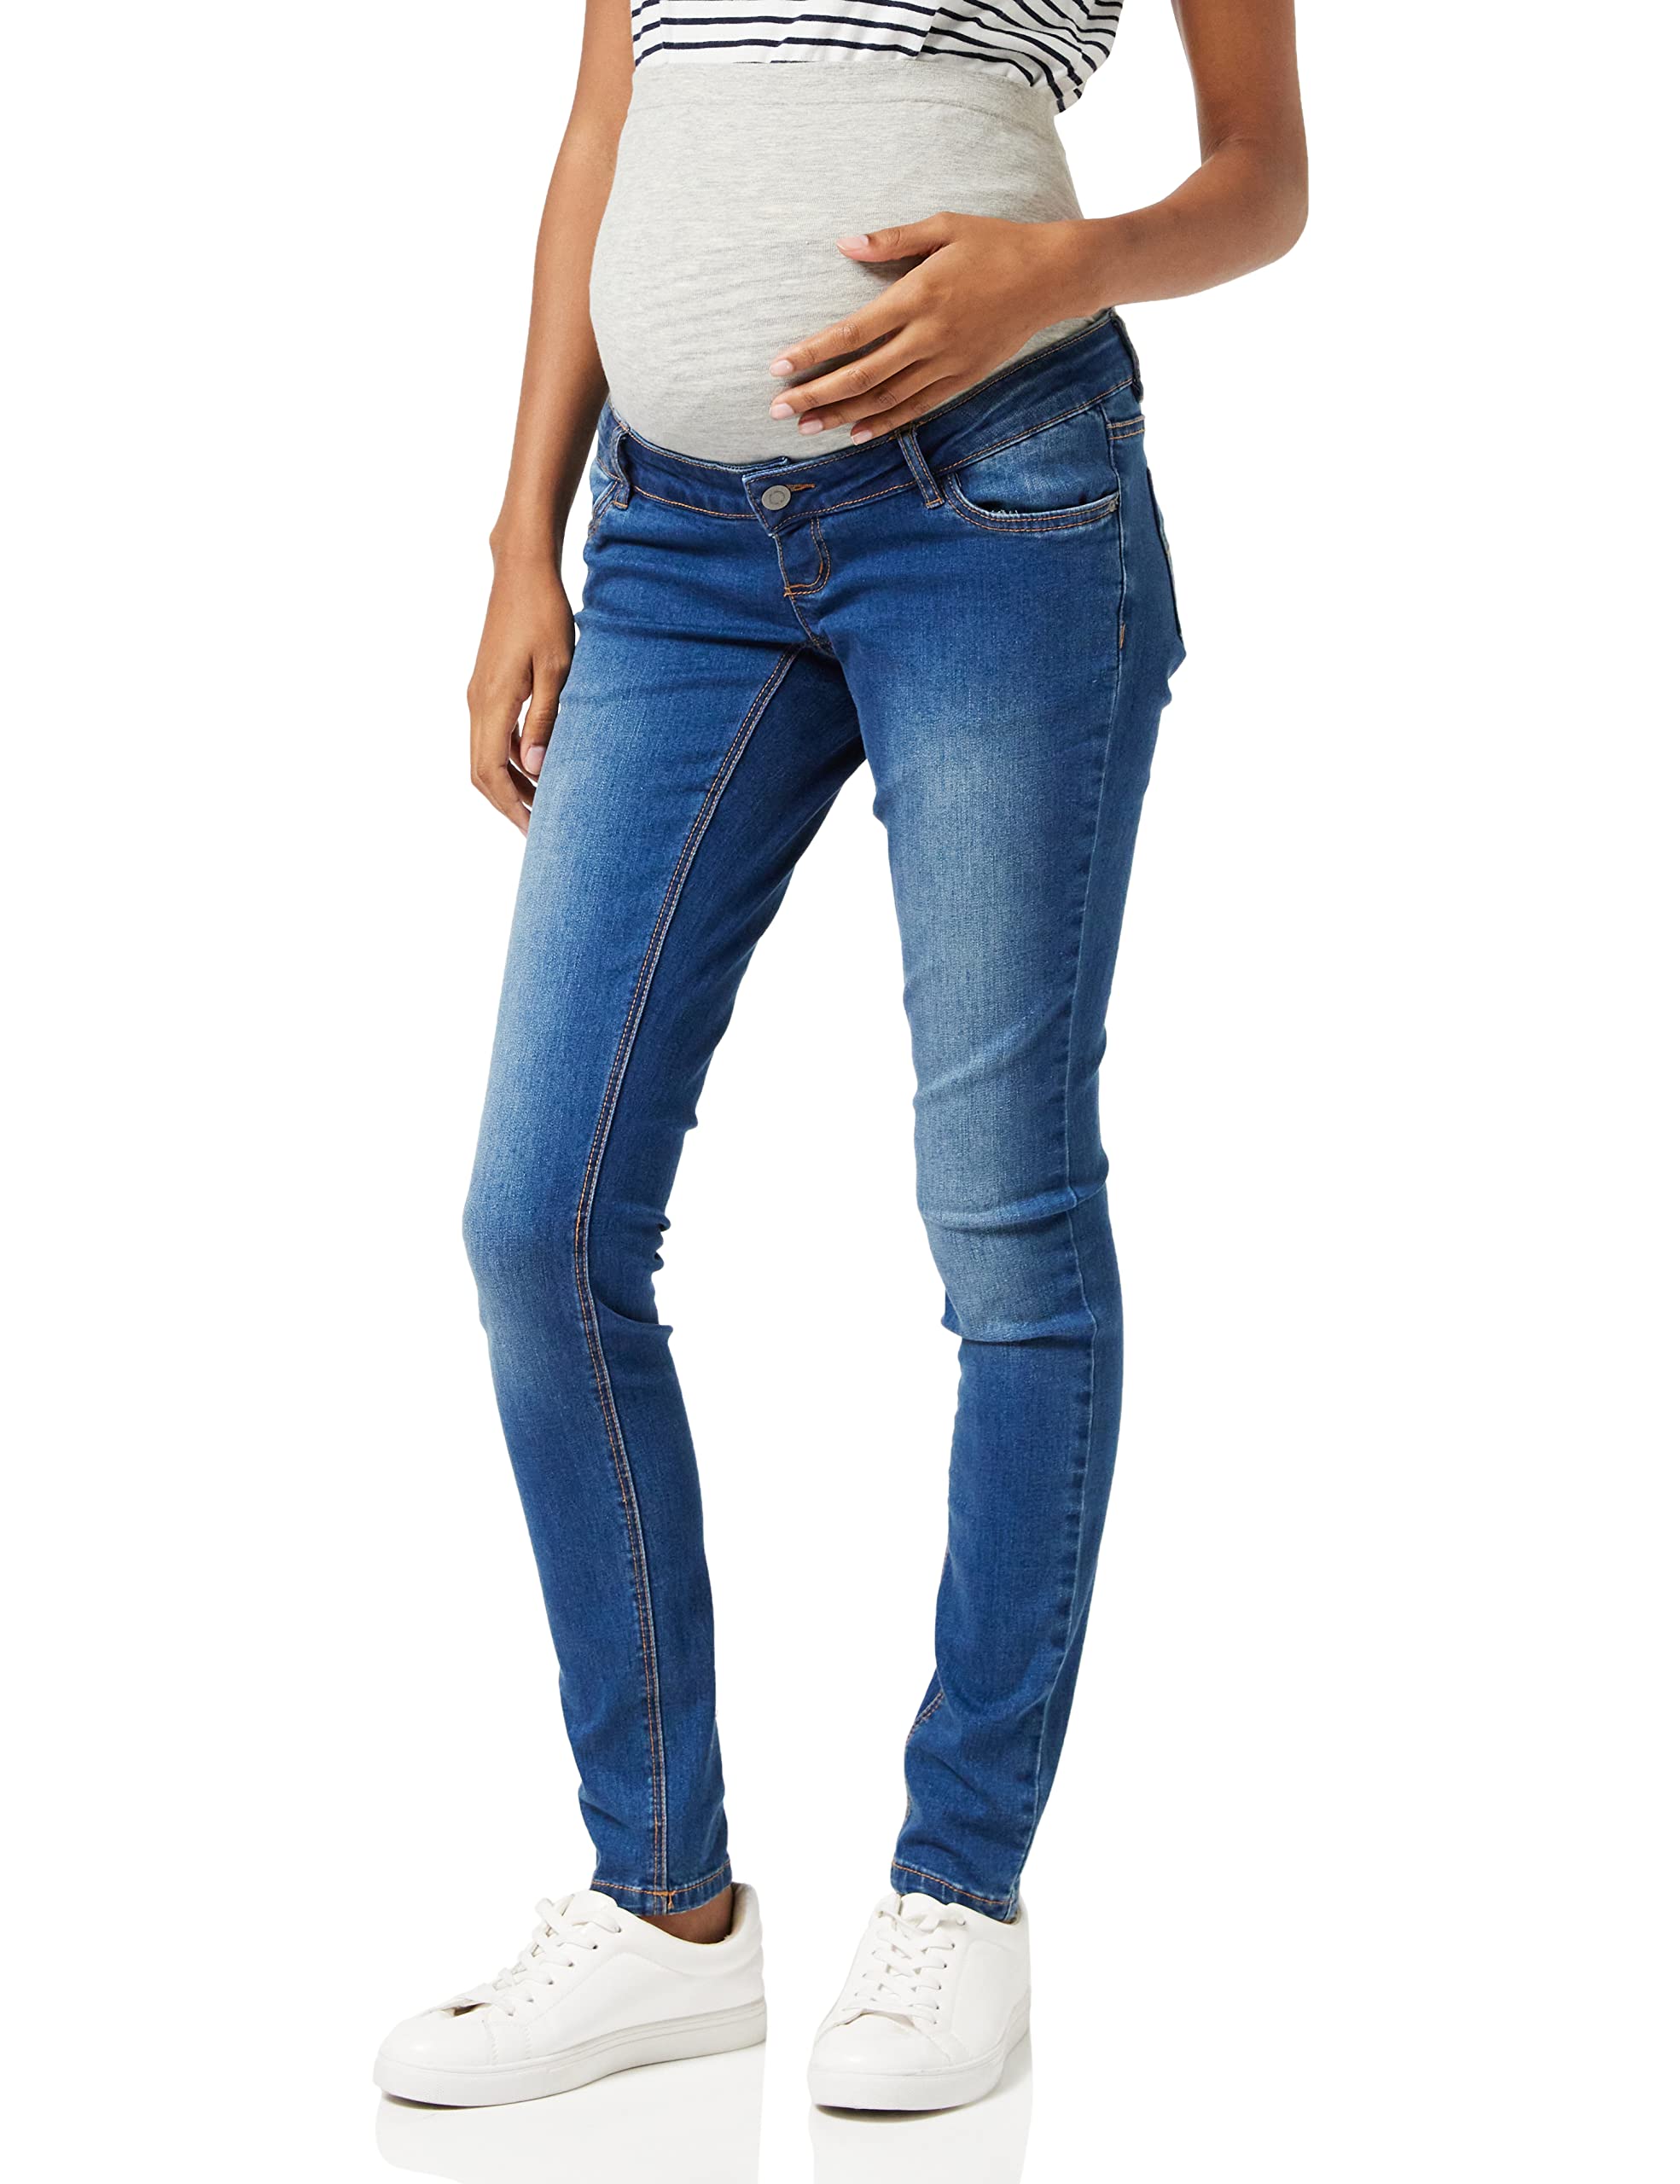 MAMALICIOUS Damen Mllola slanke blå jeans Noos B. Umstandshose, Blue Denim, 33W / 32L EU